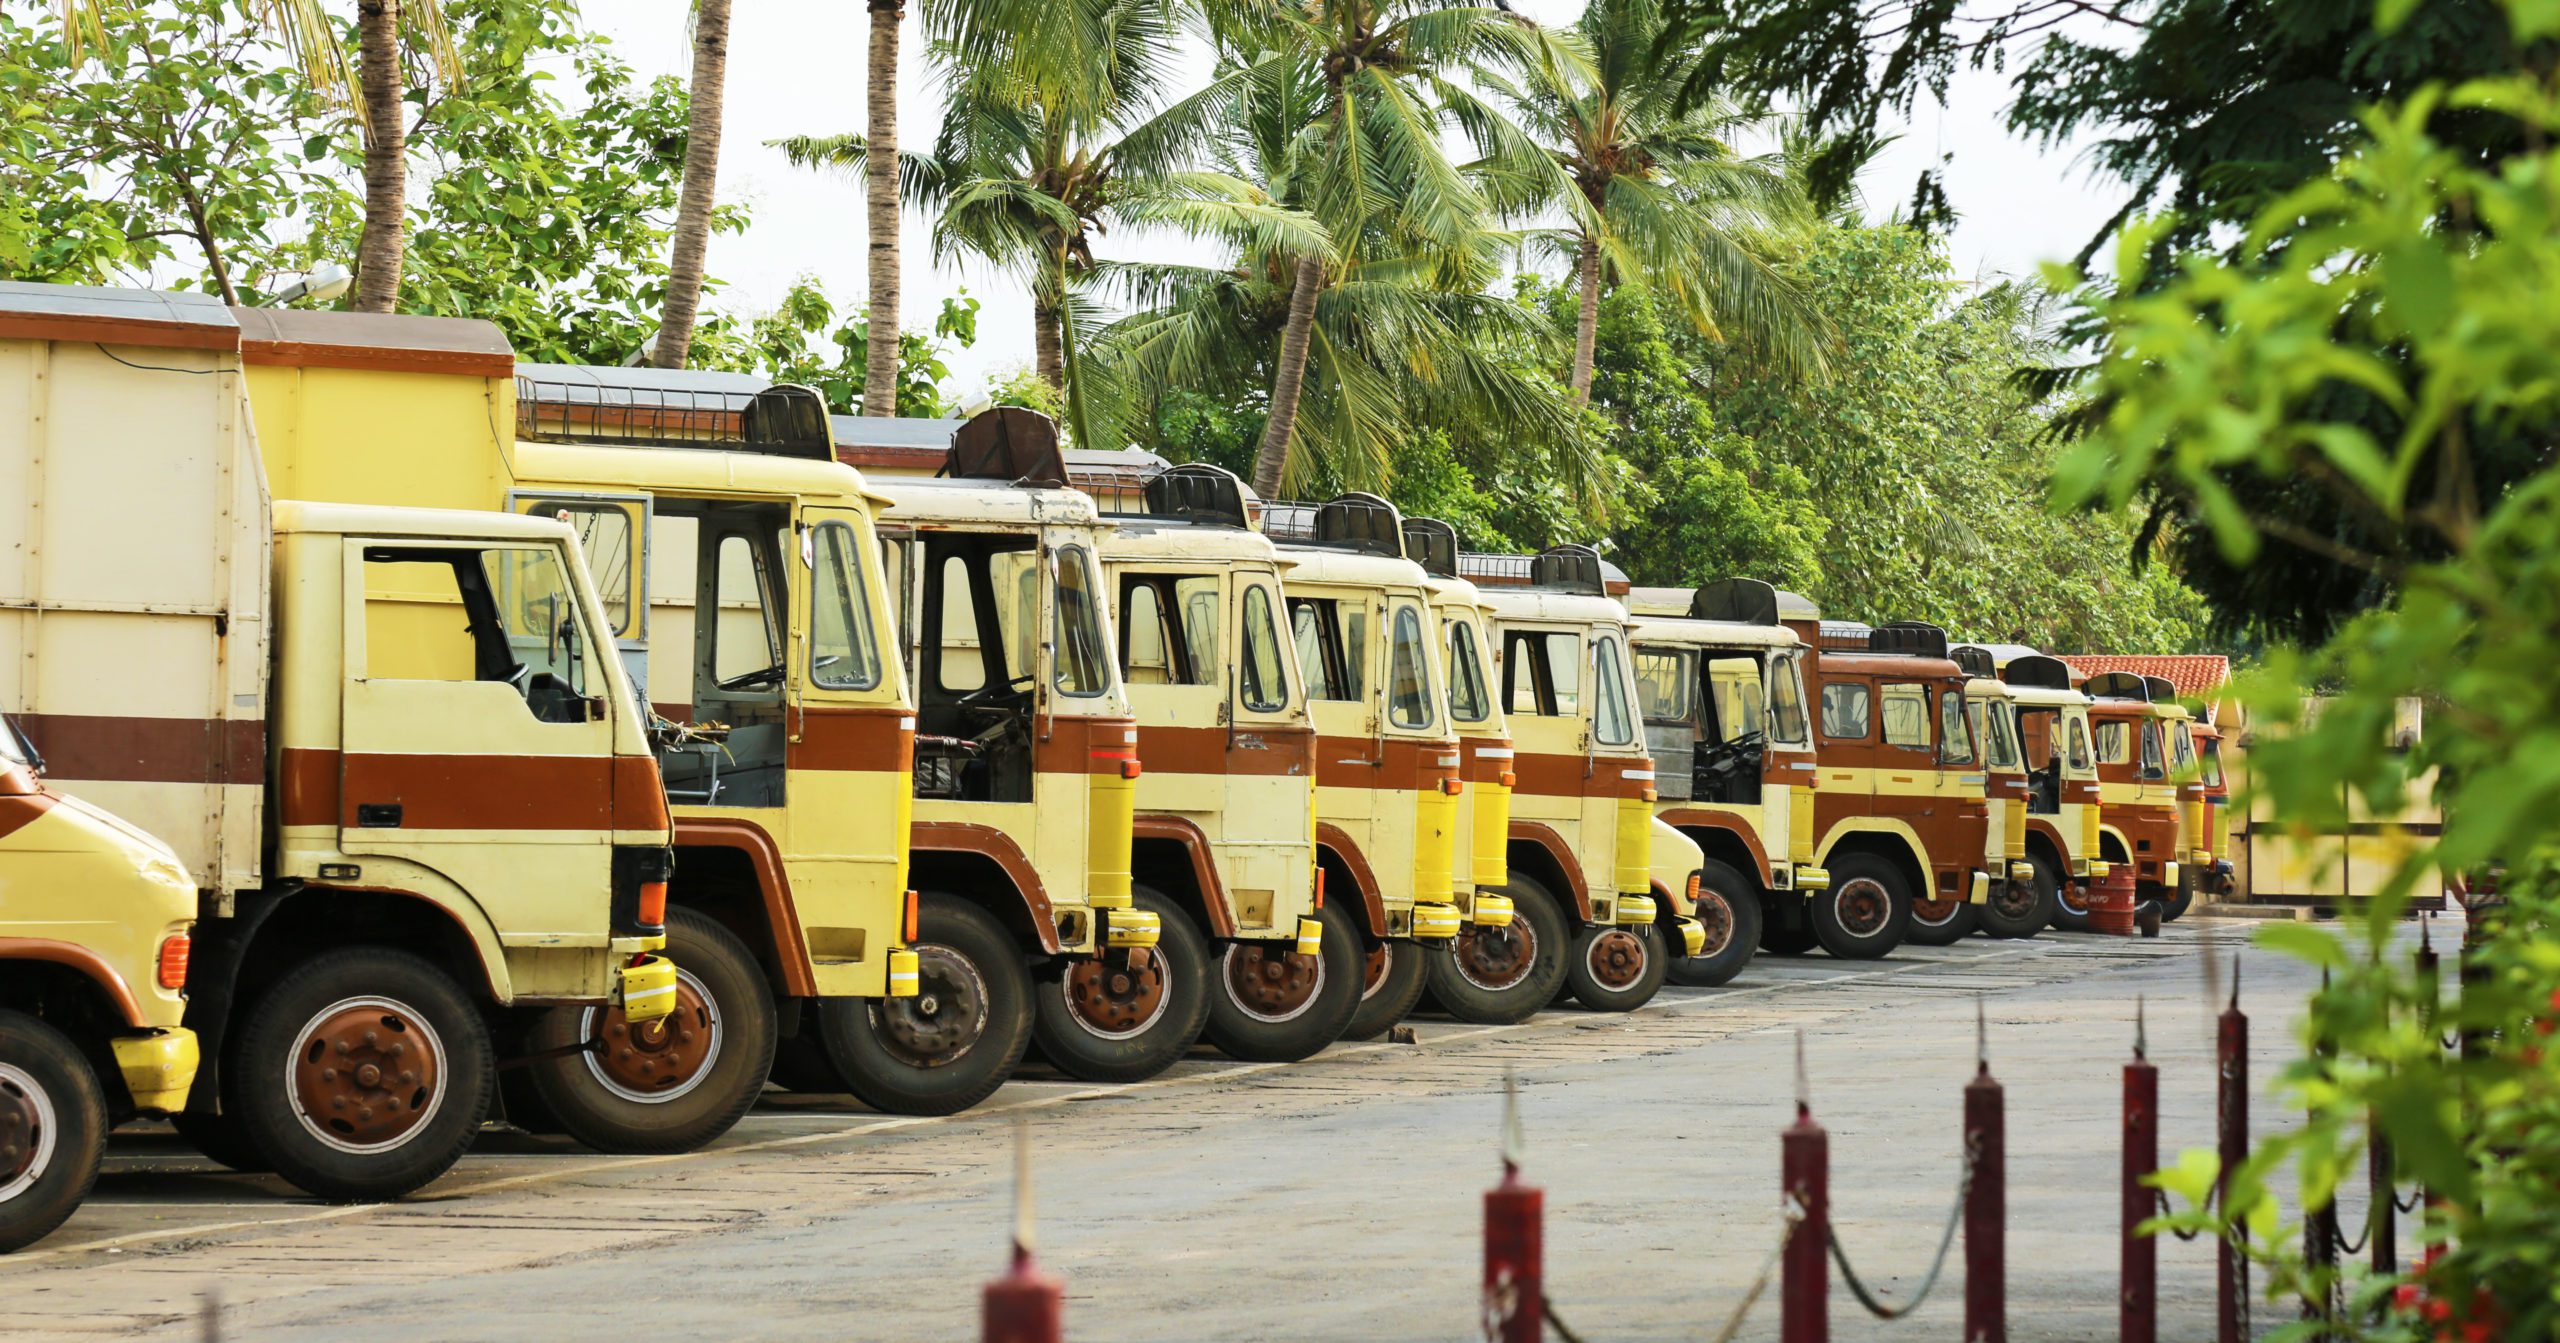 Road Transportation Of India Transport Industry